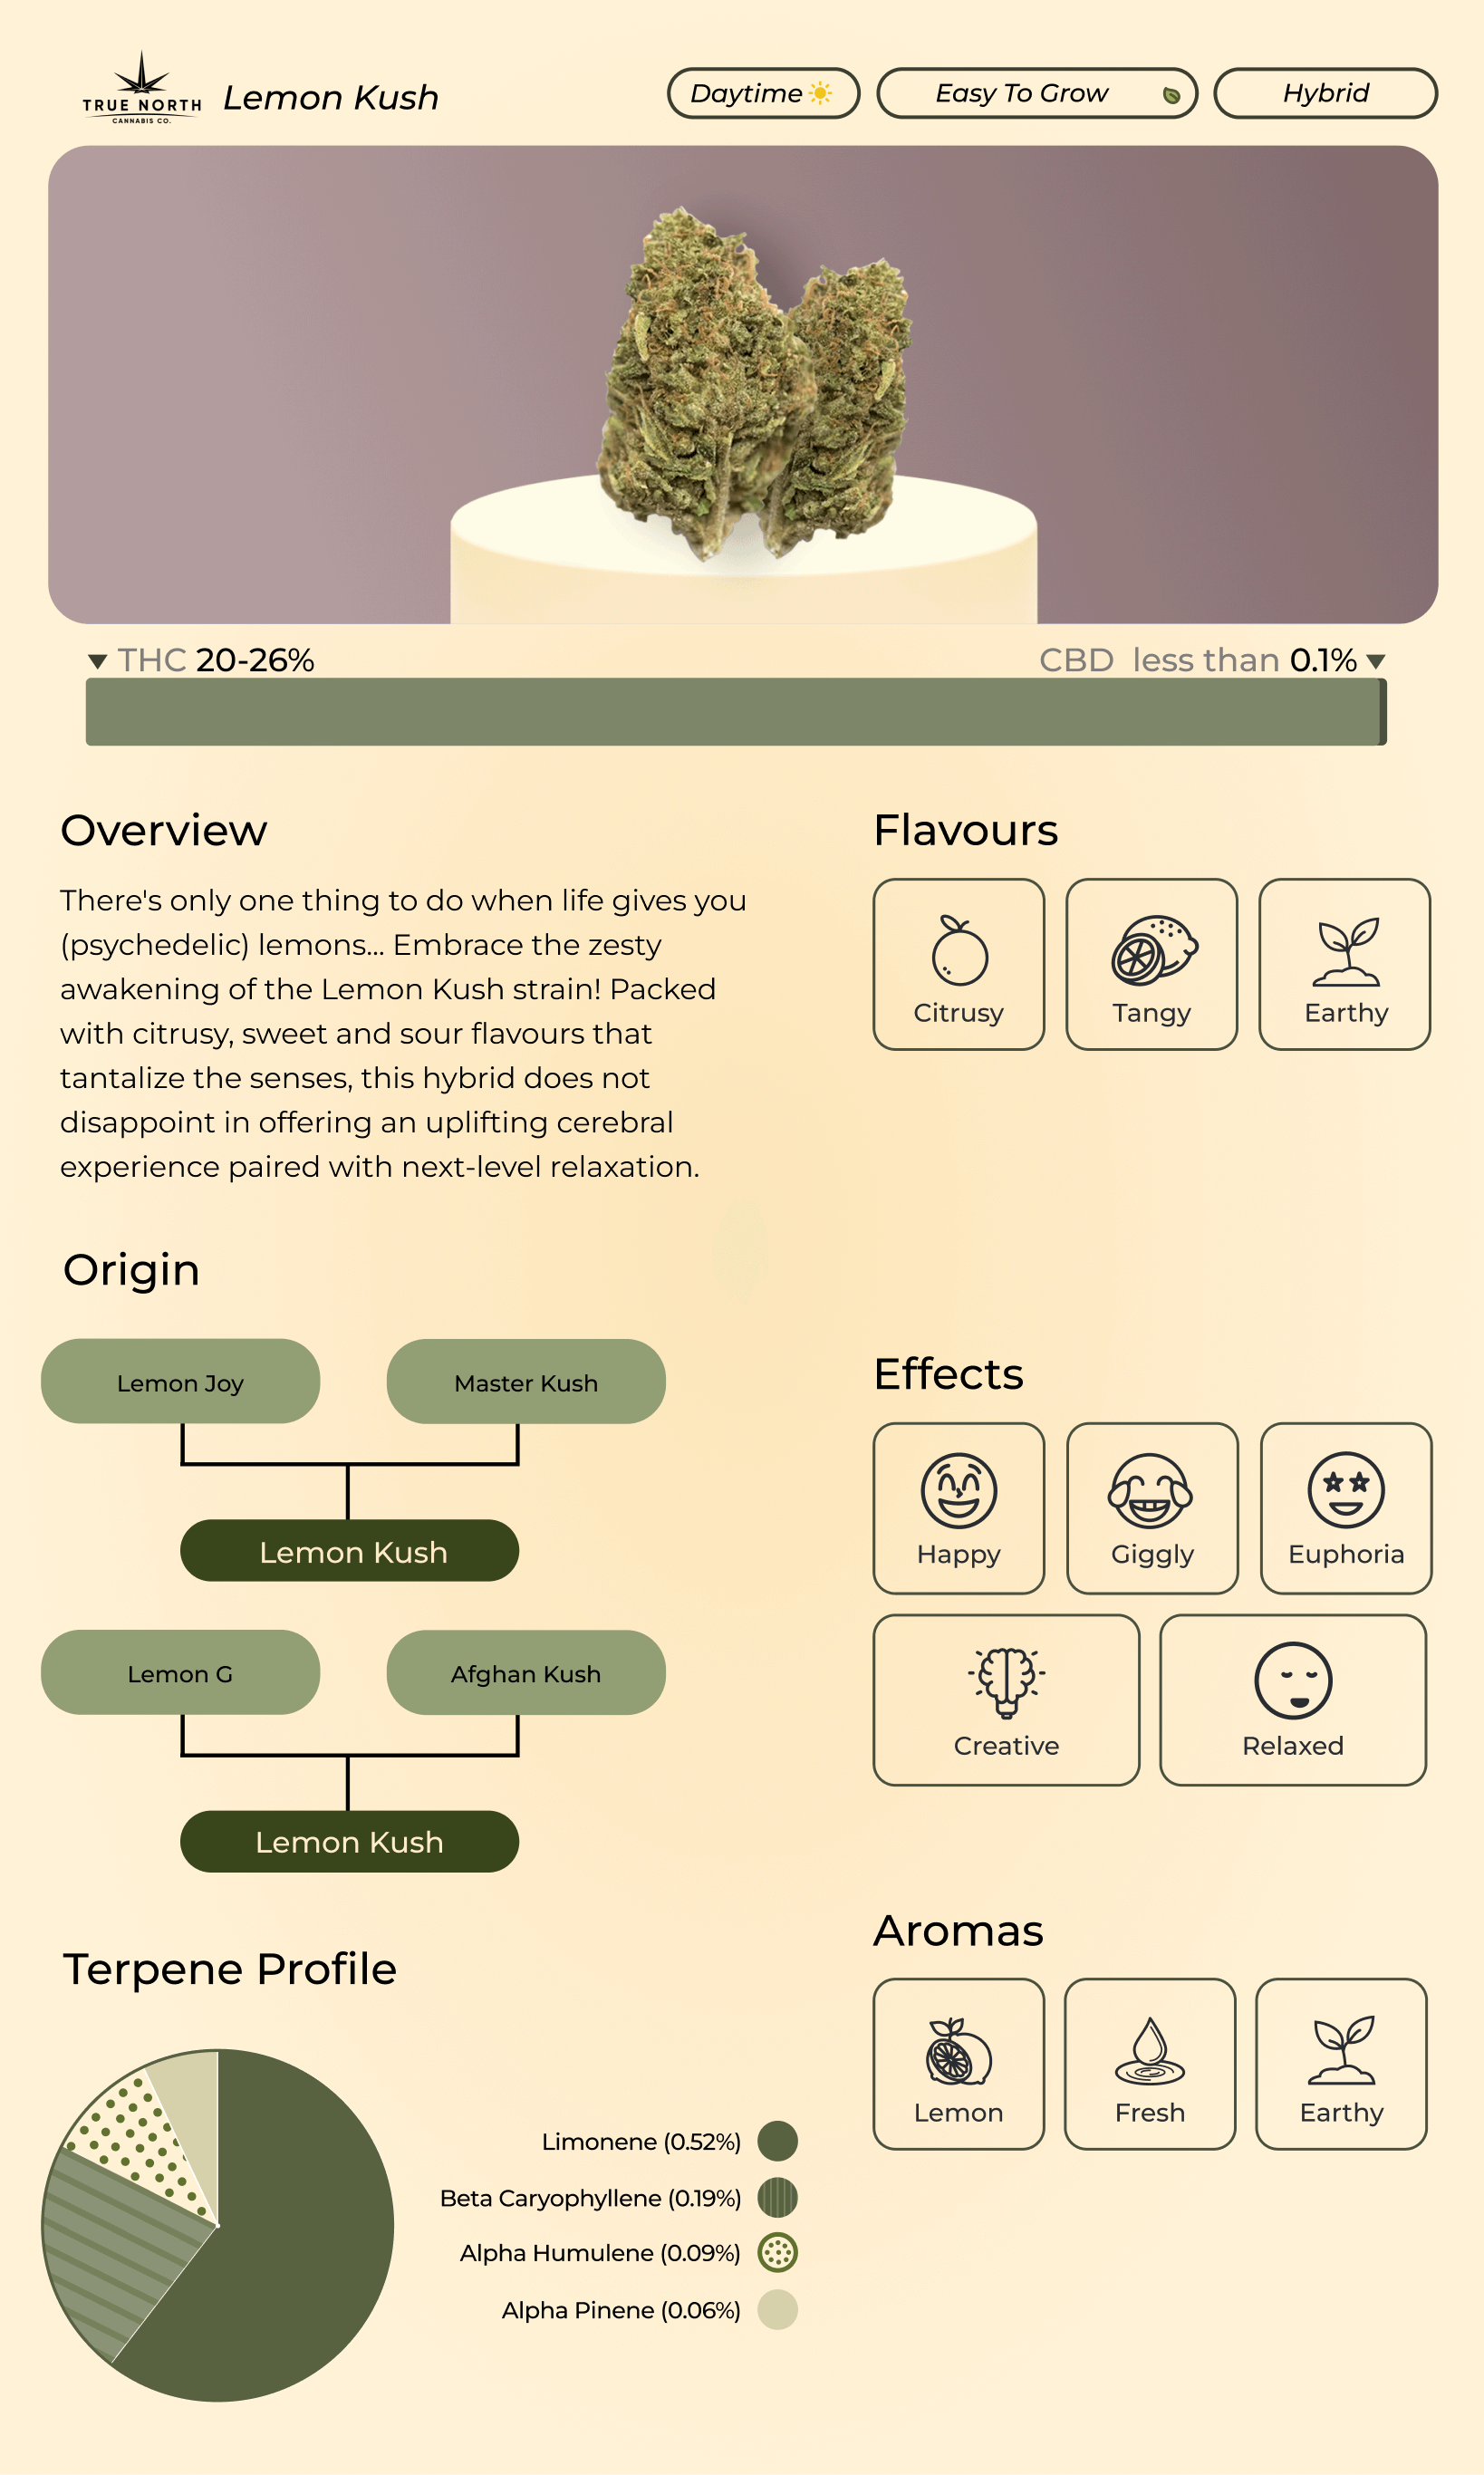 A custom infographic depicting Lemon Kush strain info